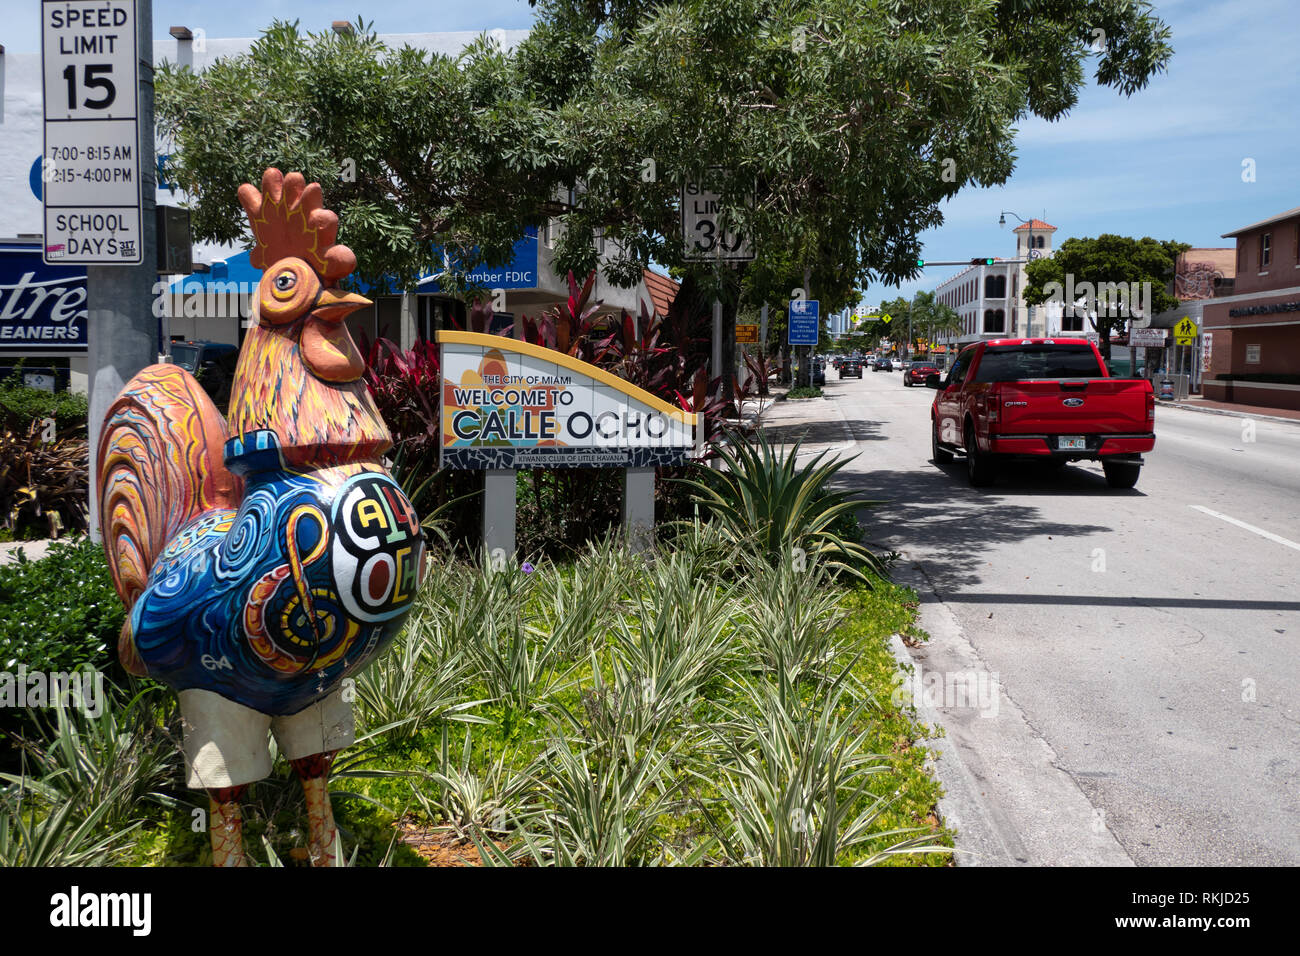 Vue sur la Calle Ocho dans le district de Little Havana à Miami, Floride, USA avec panneau de bienvenue sur la route Banque D'Images